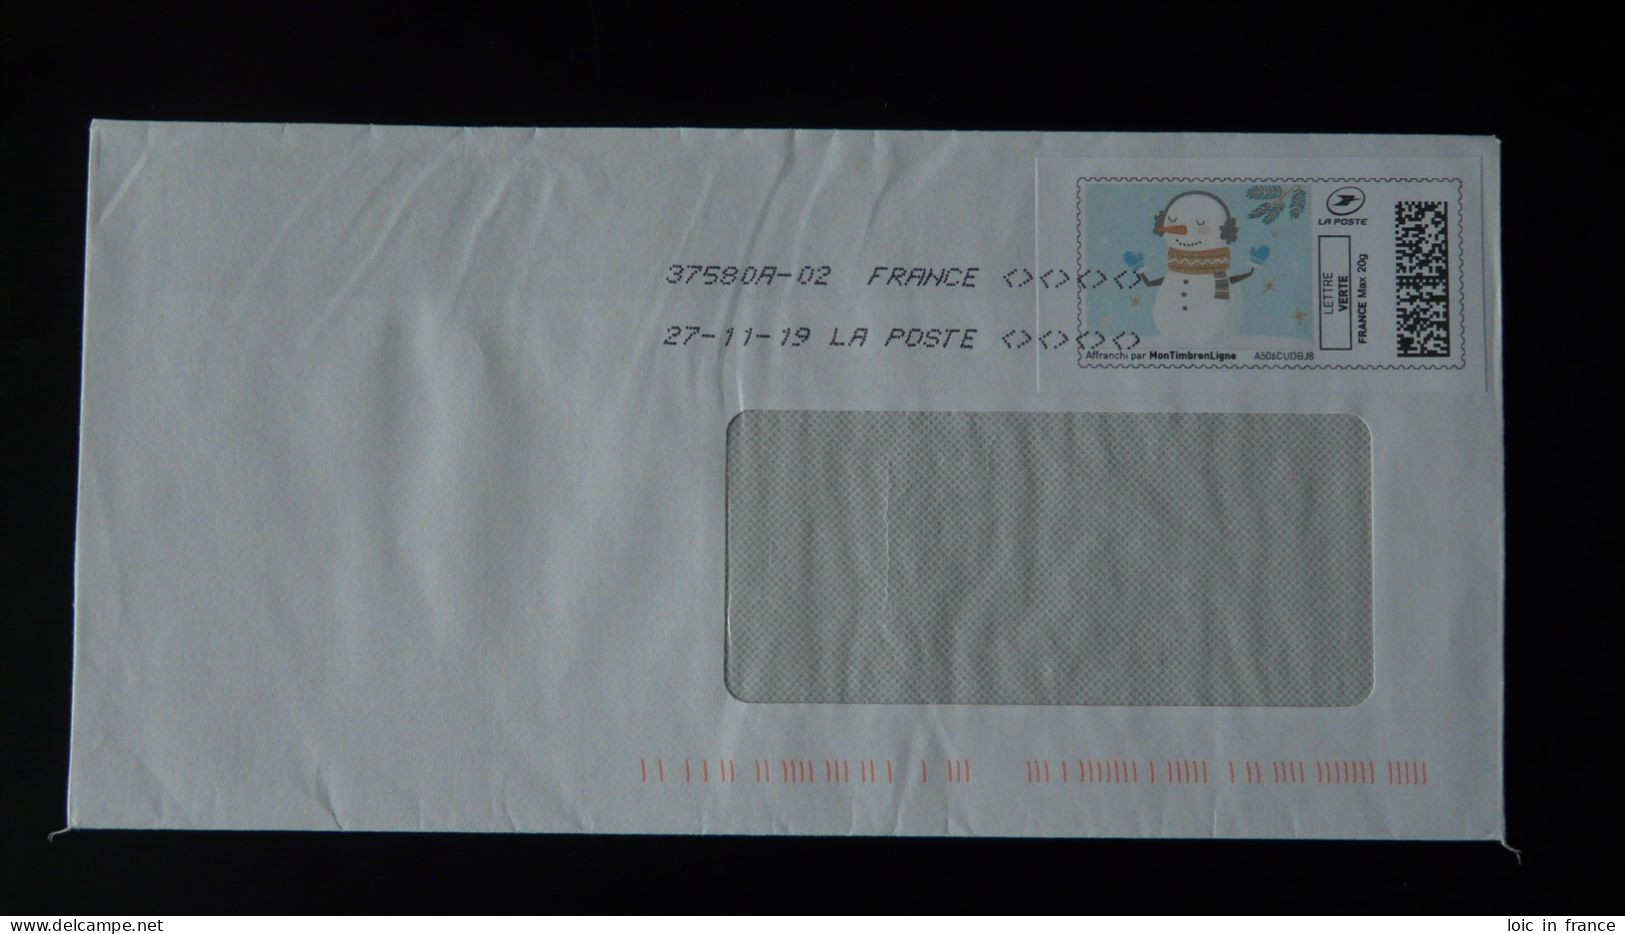 Bonhomme De Neige Timbre En Ligne Montimbrenligne Sur Lettre (e-stamp On Cover) Ref TPP 5146 - Timbres à Imprimer (Montimbrenligne)